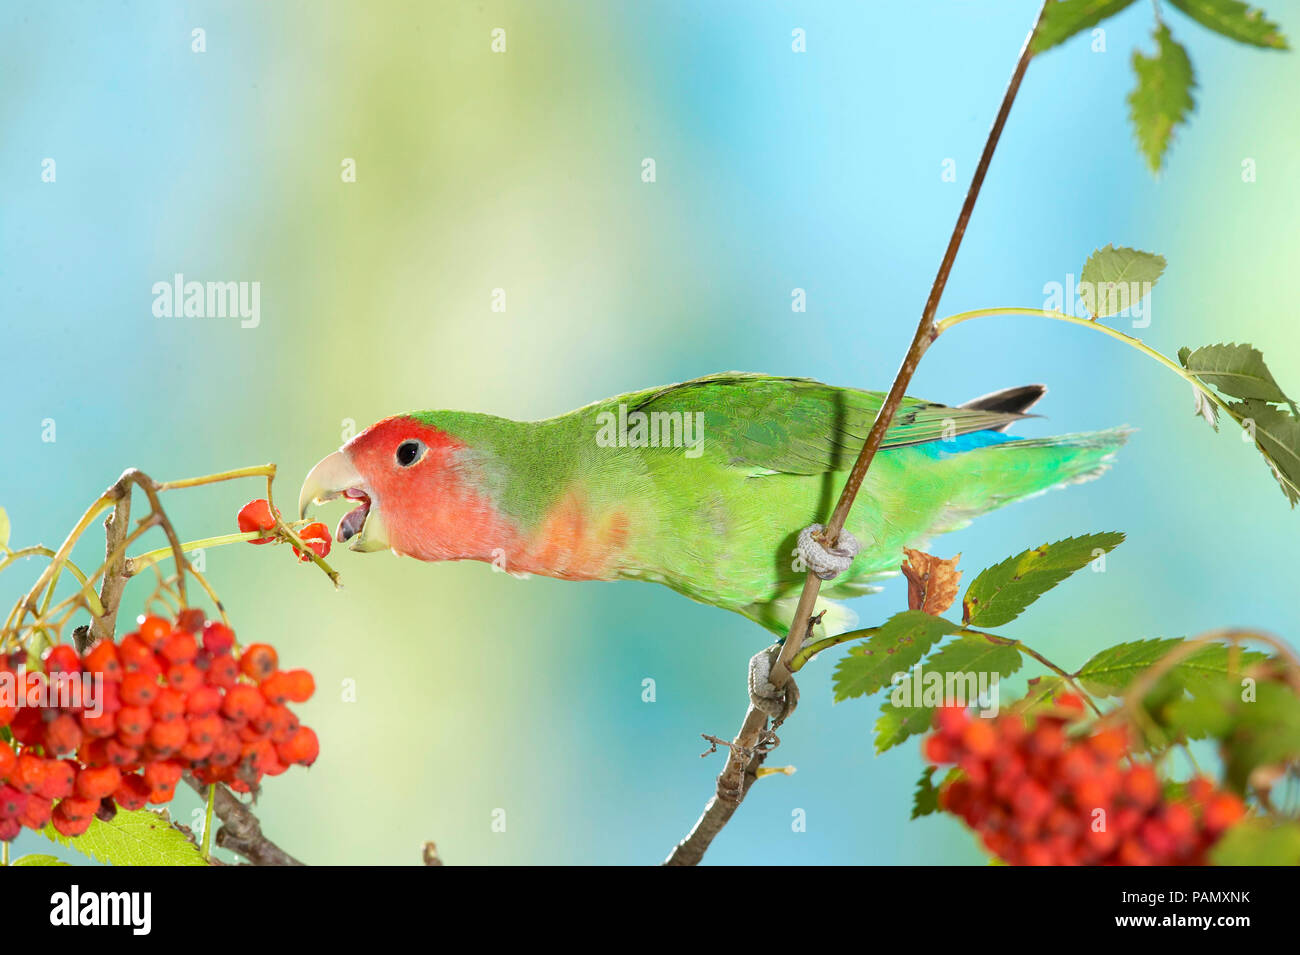 Rosy Inséparable rosegorge (Agapornis roseicollis). Les oiseaux adultes perché sur brindille en mangeant des baies Rowan. L'Allemagne. Banque D'Images